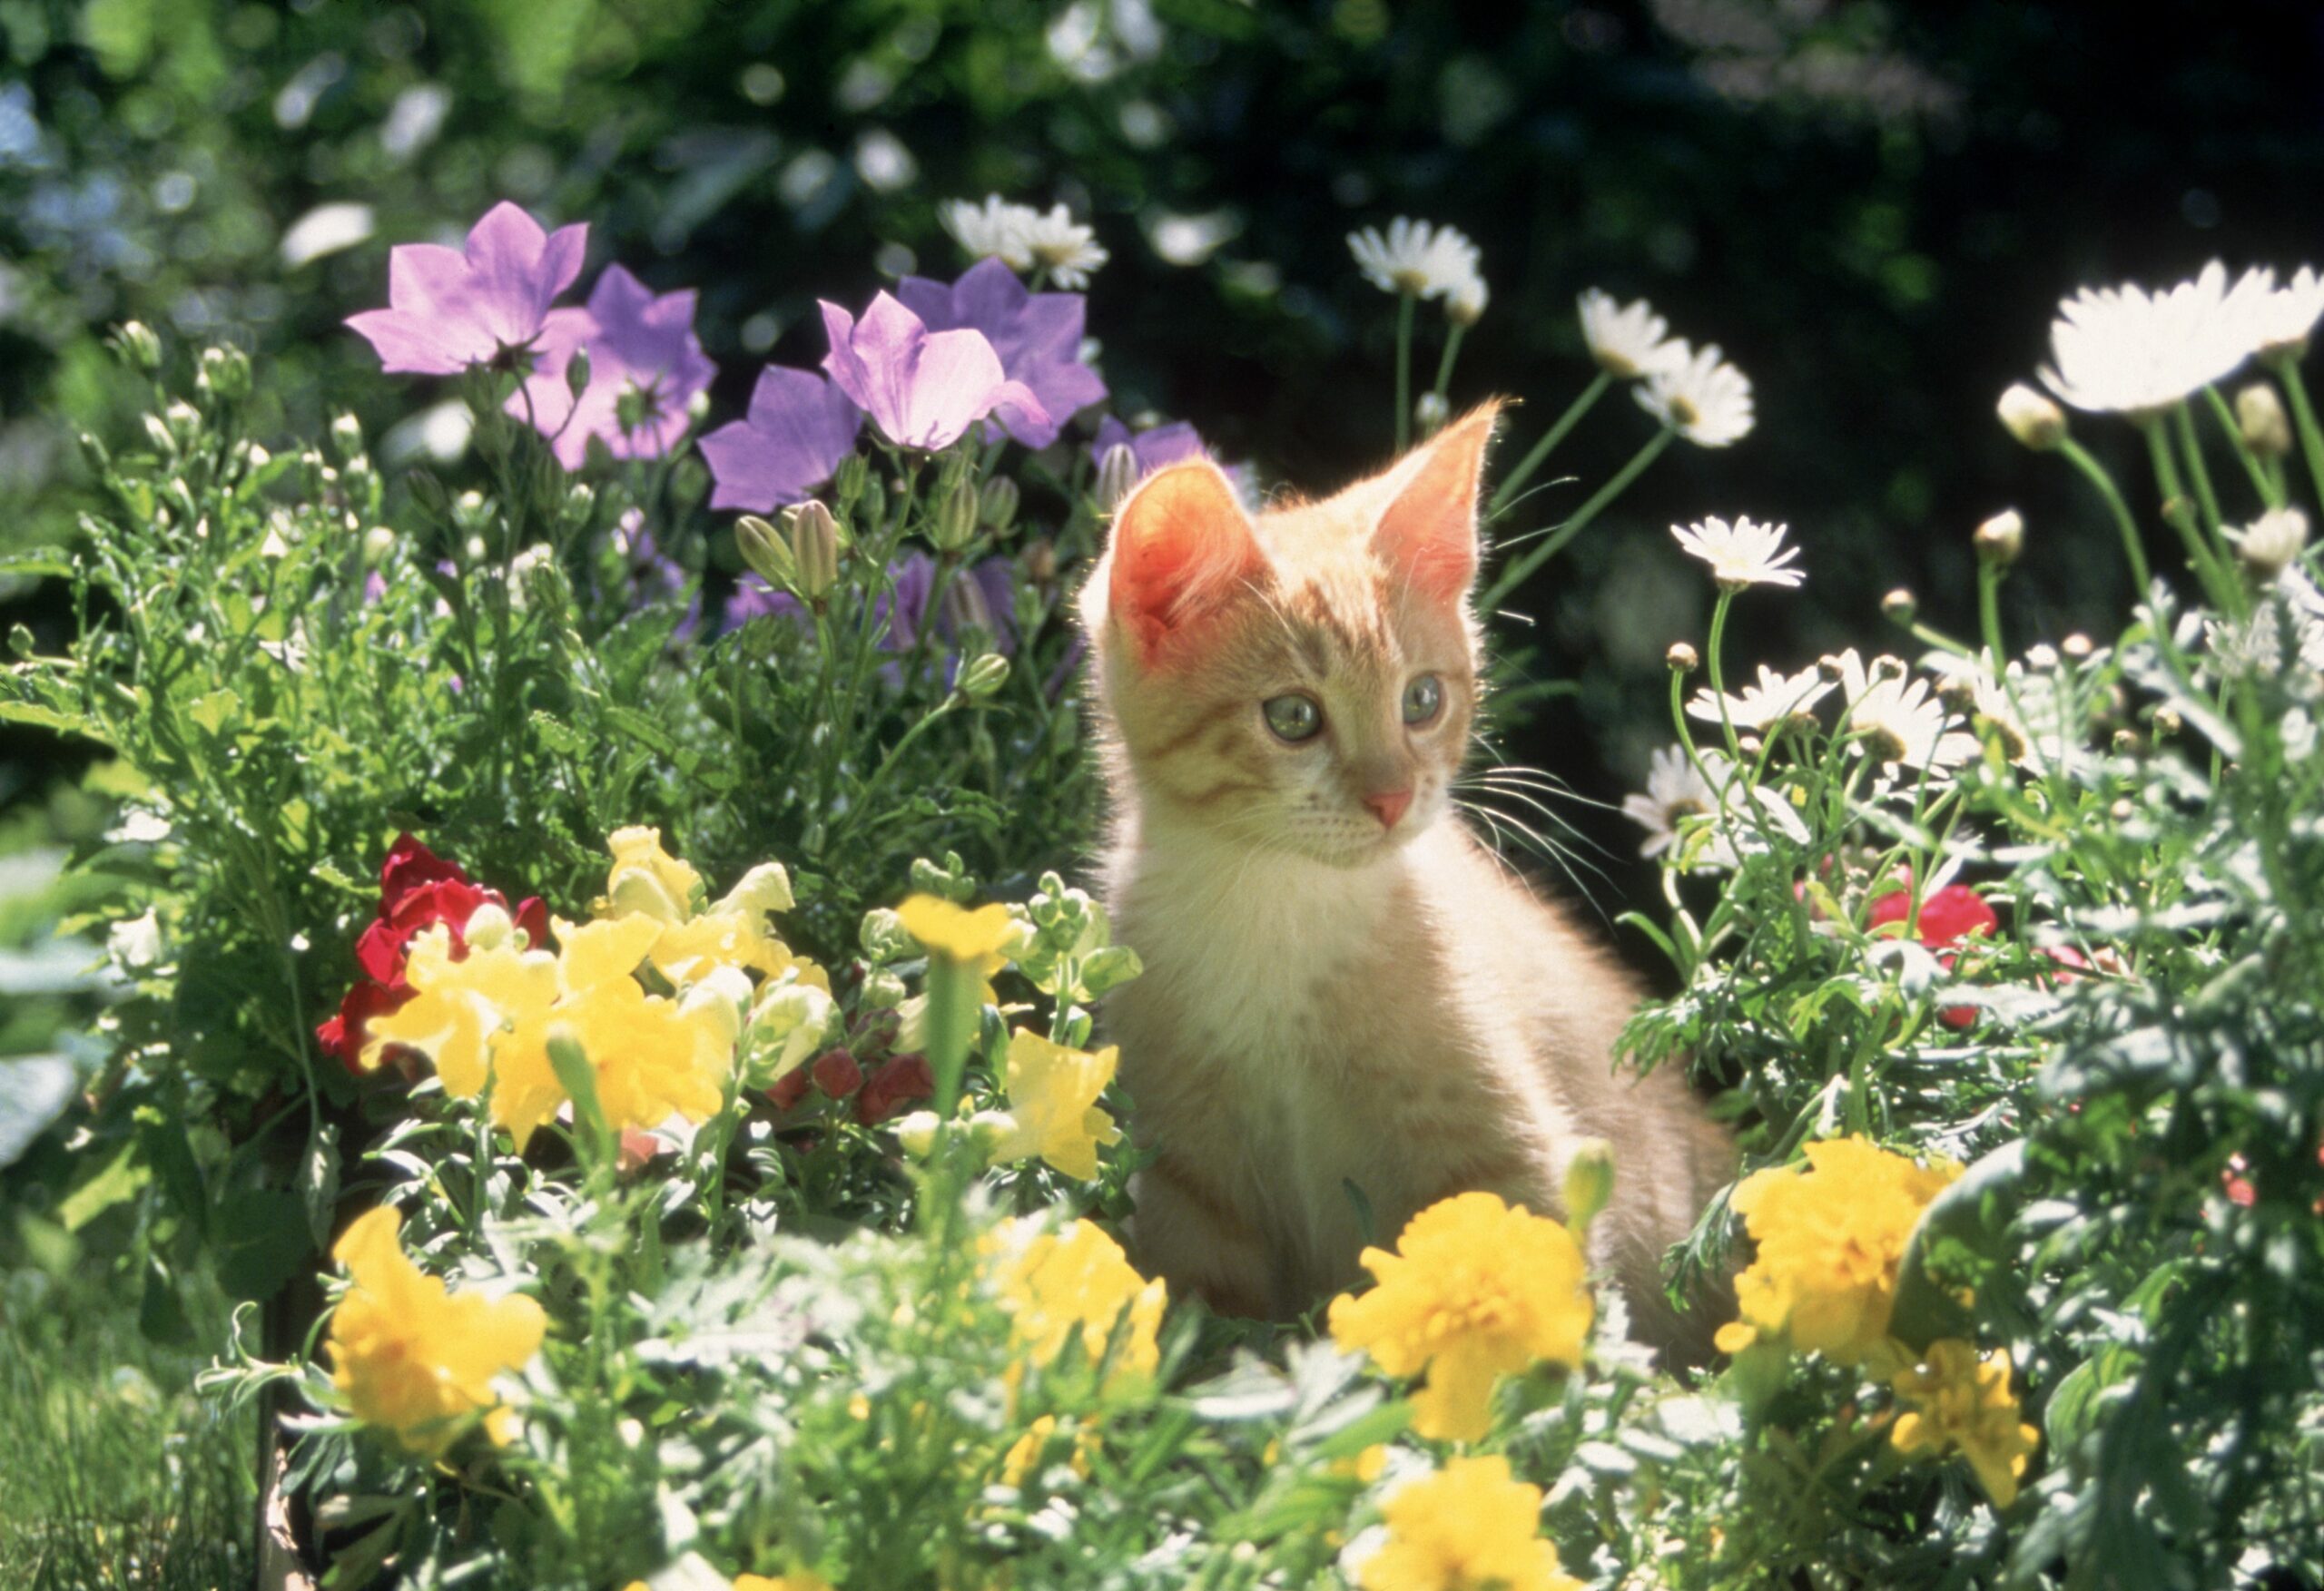 orange kitten sitting in flower bed 052c40cdd3e04c6d8926baec3e6ab53b scaled